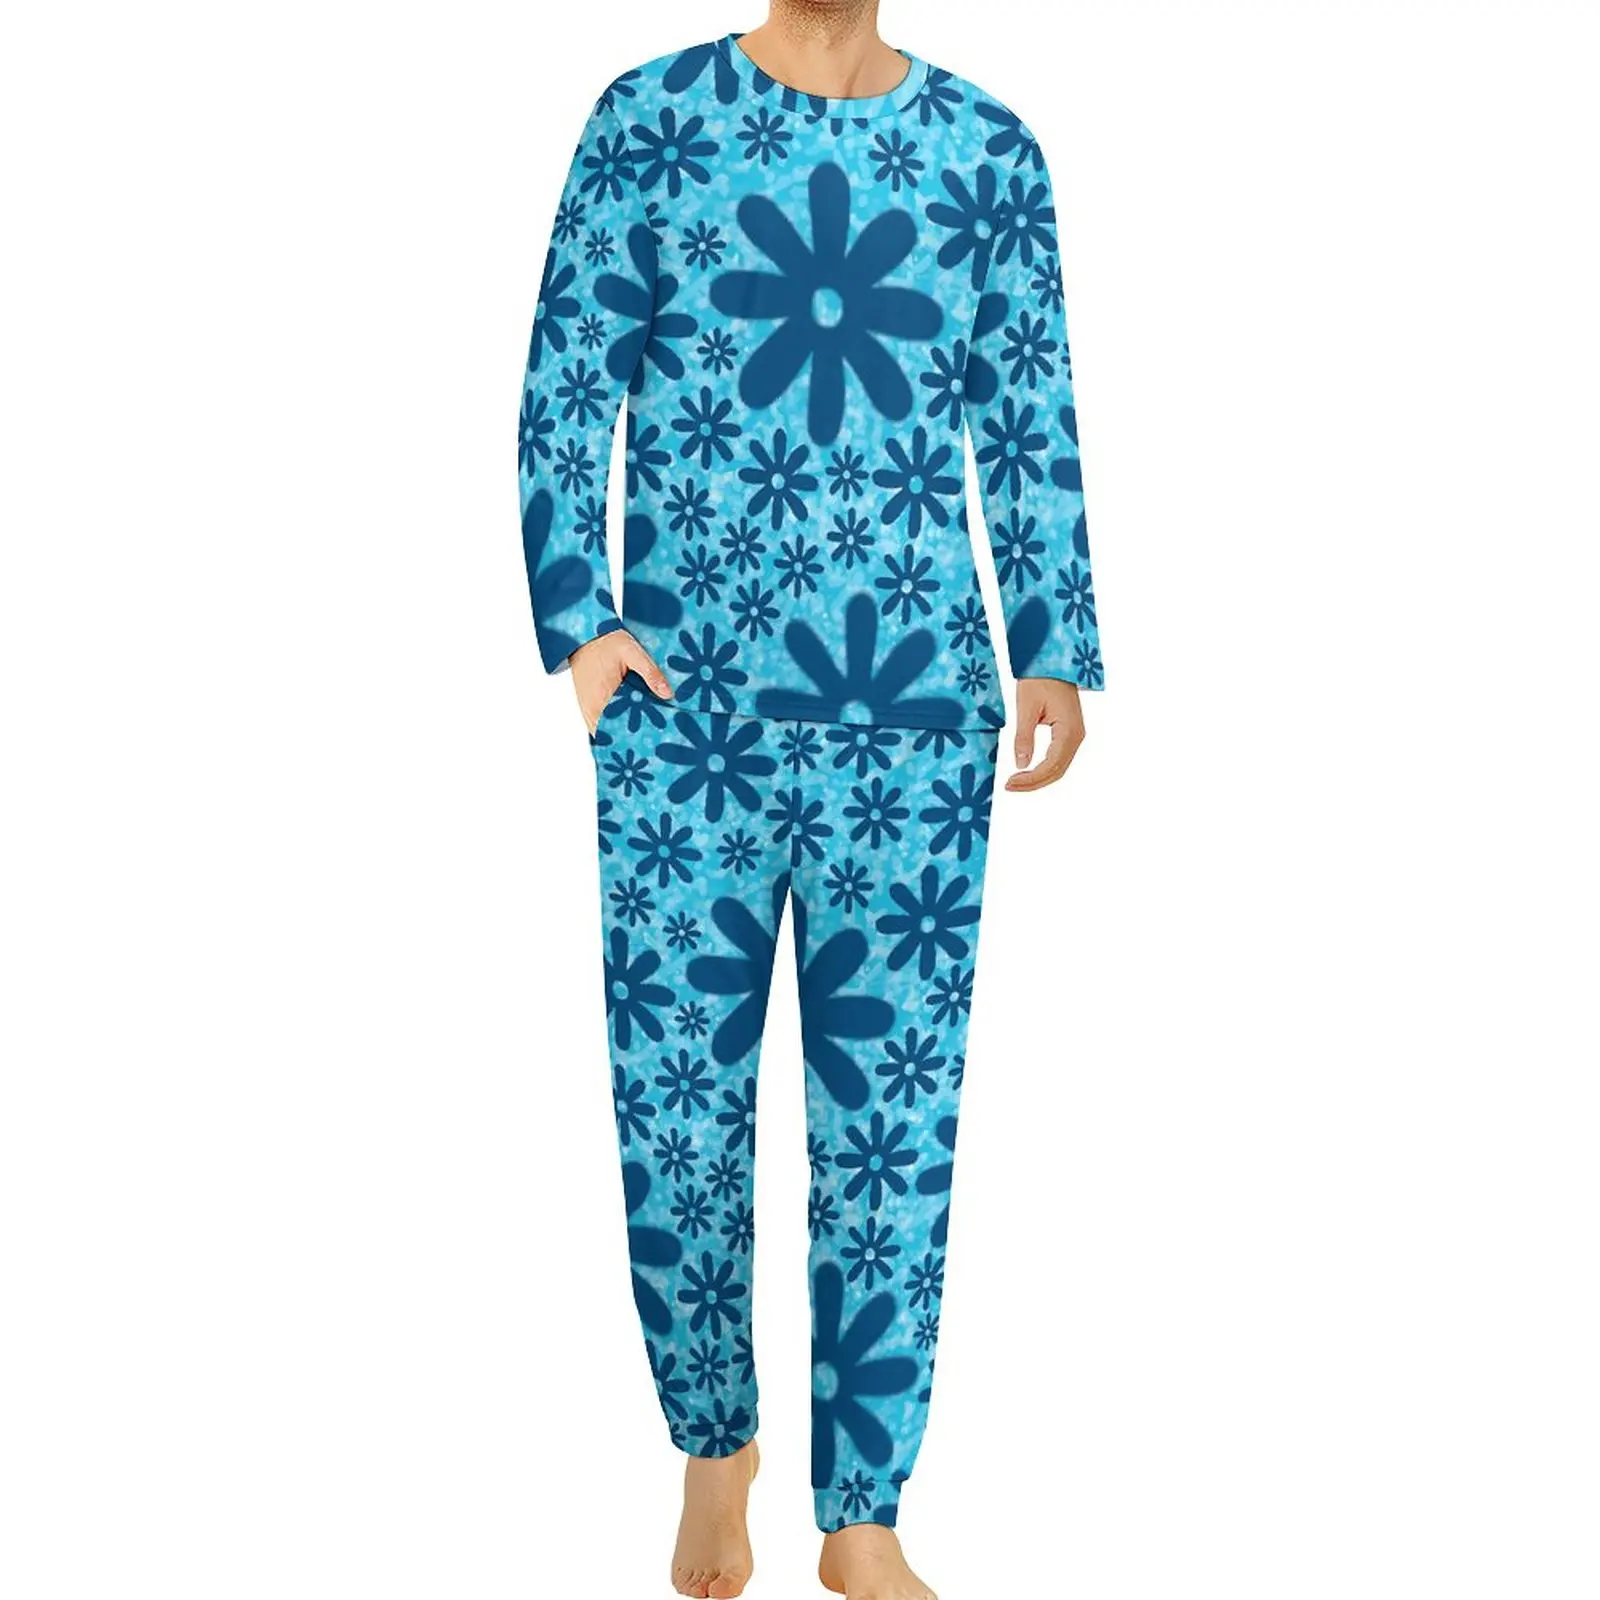 

Пижама с принтом синих маргариток, зимняя Милая пижама из 2 предметов в стиле ретро с цветами, Мужская Ночная сорочка с длинным рукавом и ночным дизайном, большого размера